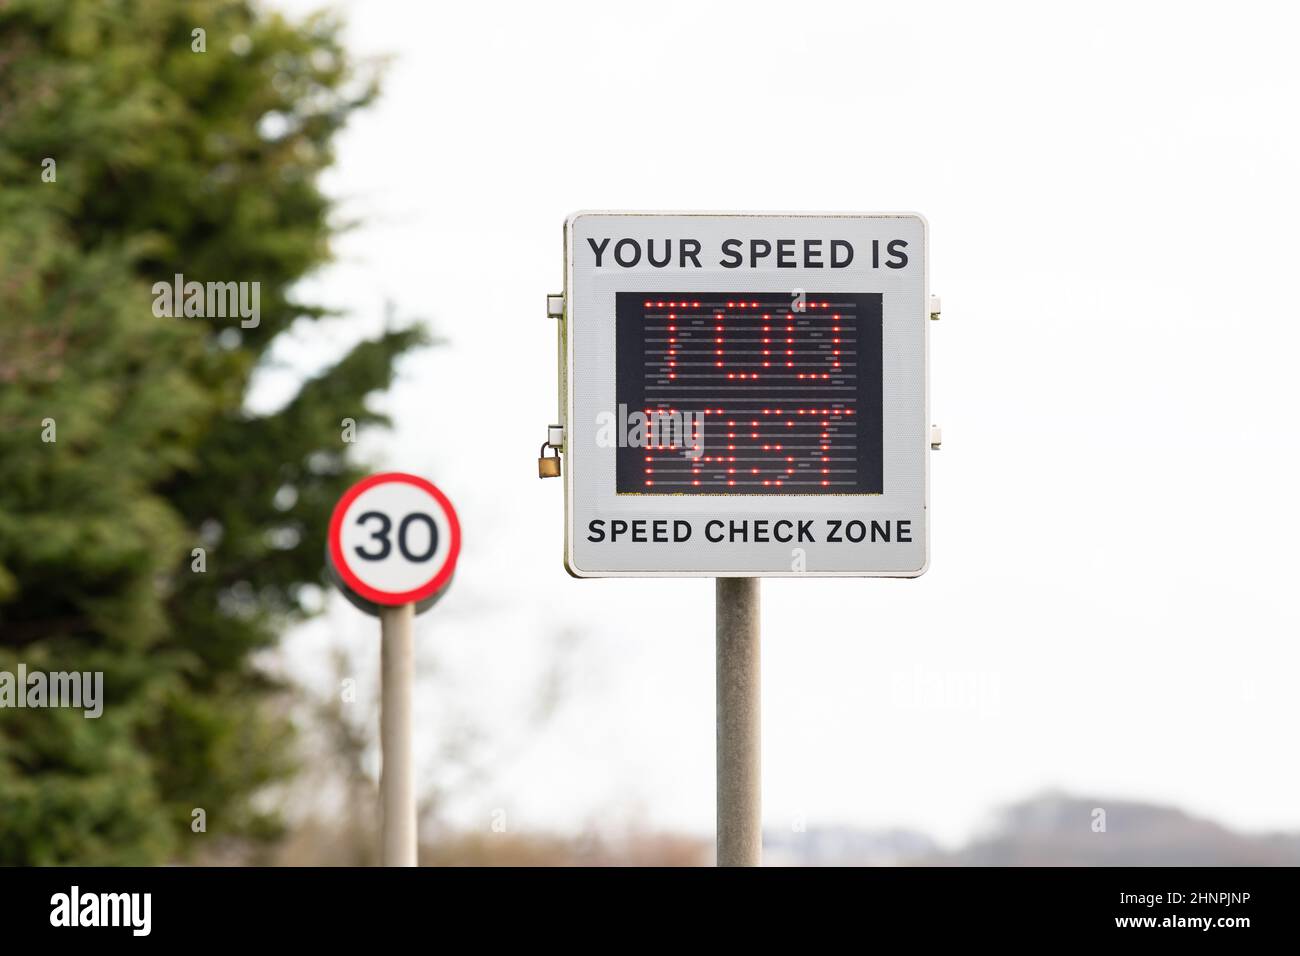 Geschwindigkeitsüberschreitung in 30mph Zonen - Fahrzeug aktiviert Geschwindigkeitsanzeige Gerätesymbol mit der Meldung 'Ihre Geschwindigkeit ist zu schnell' - England, Großbritannien Stockfoto